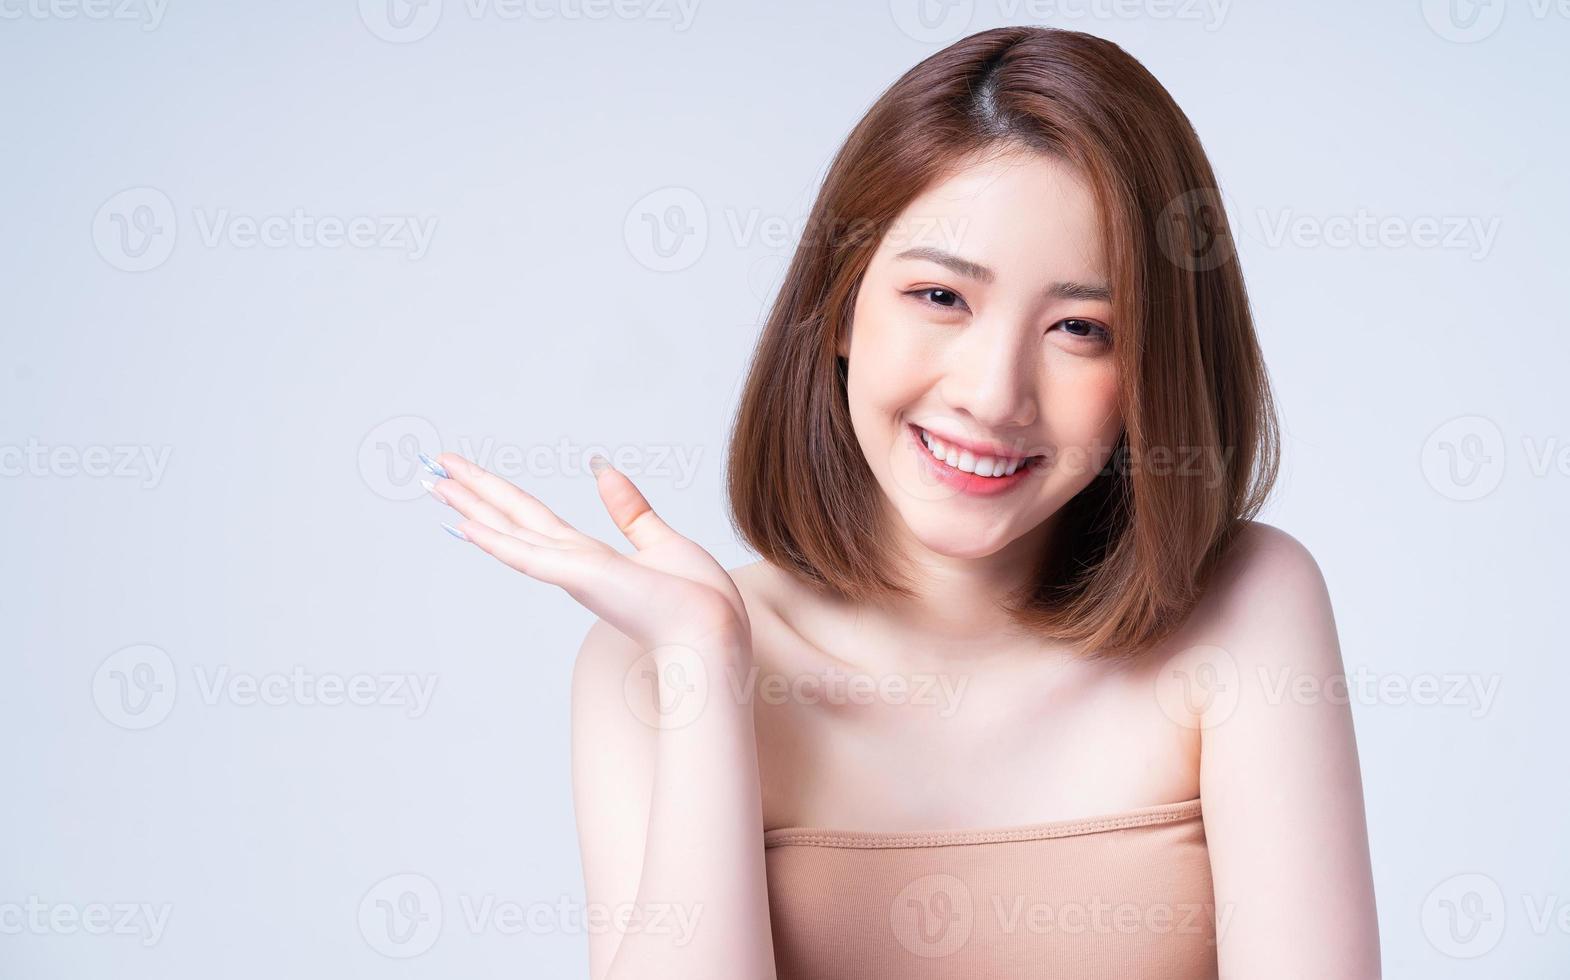 schoonheidsbeeld van jong Aziatisch meisje met perfecte huid foto